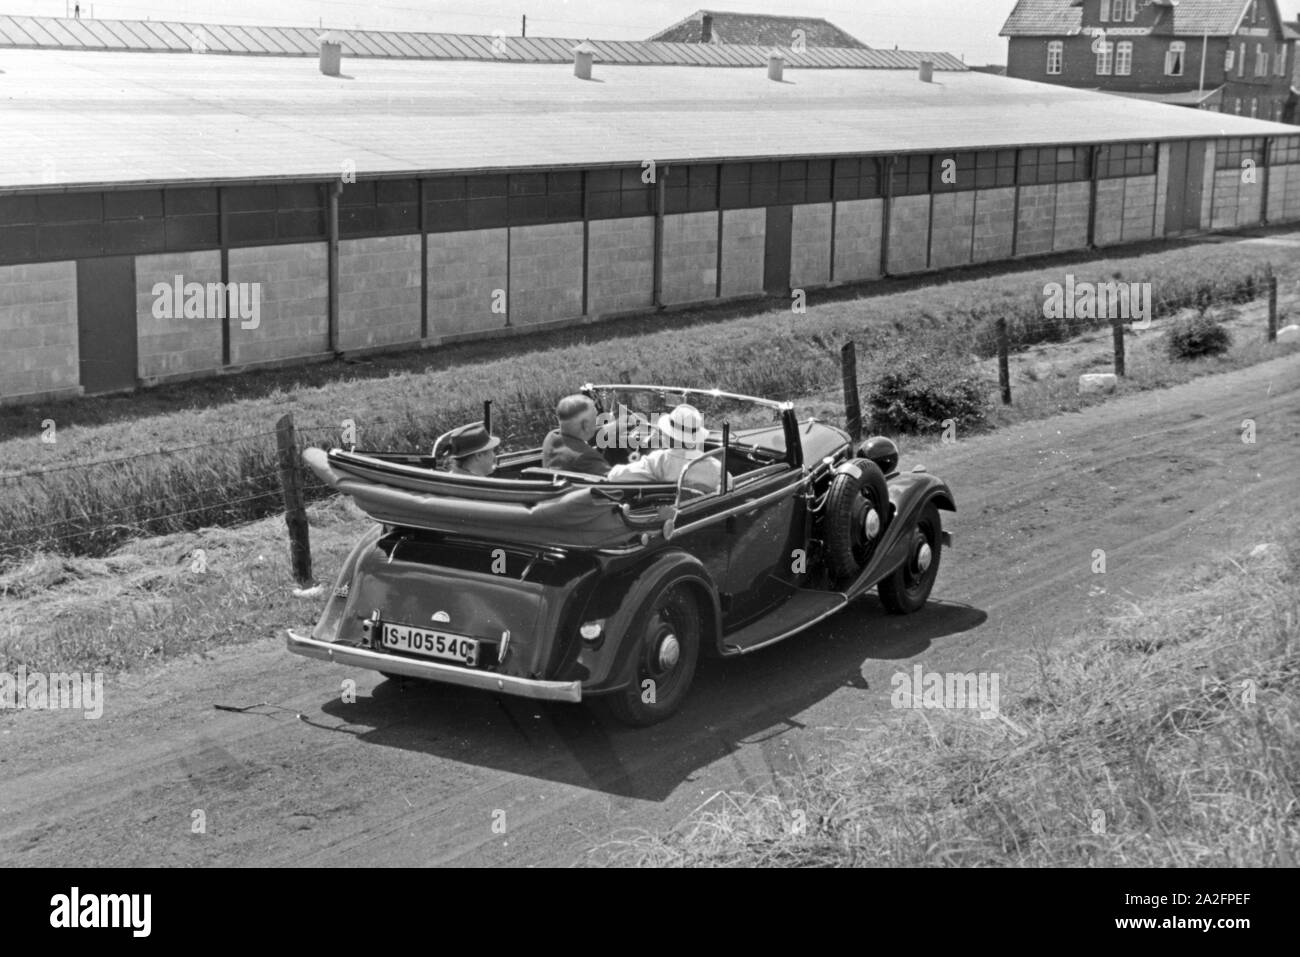 Unterwegs in einem Audi Cabrio zu den Garagen in Norddeich, Deutschland 1930er Jahre. La gente in un'Audi convertibile in garage di Norddeich, Germania 1930s. Foto Stock